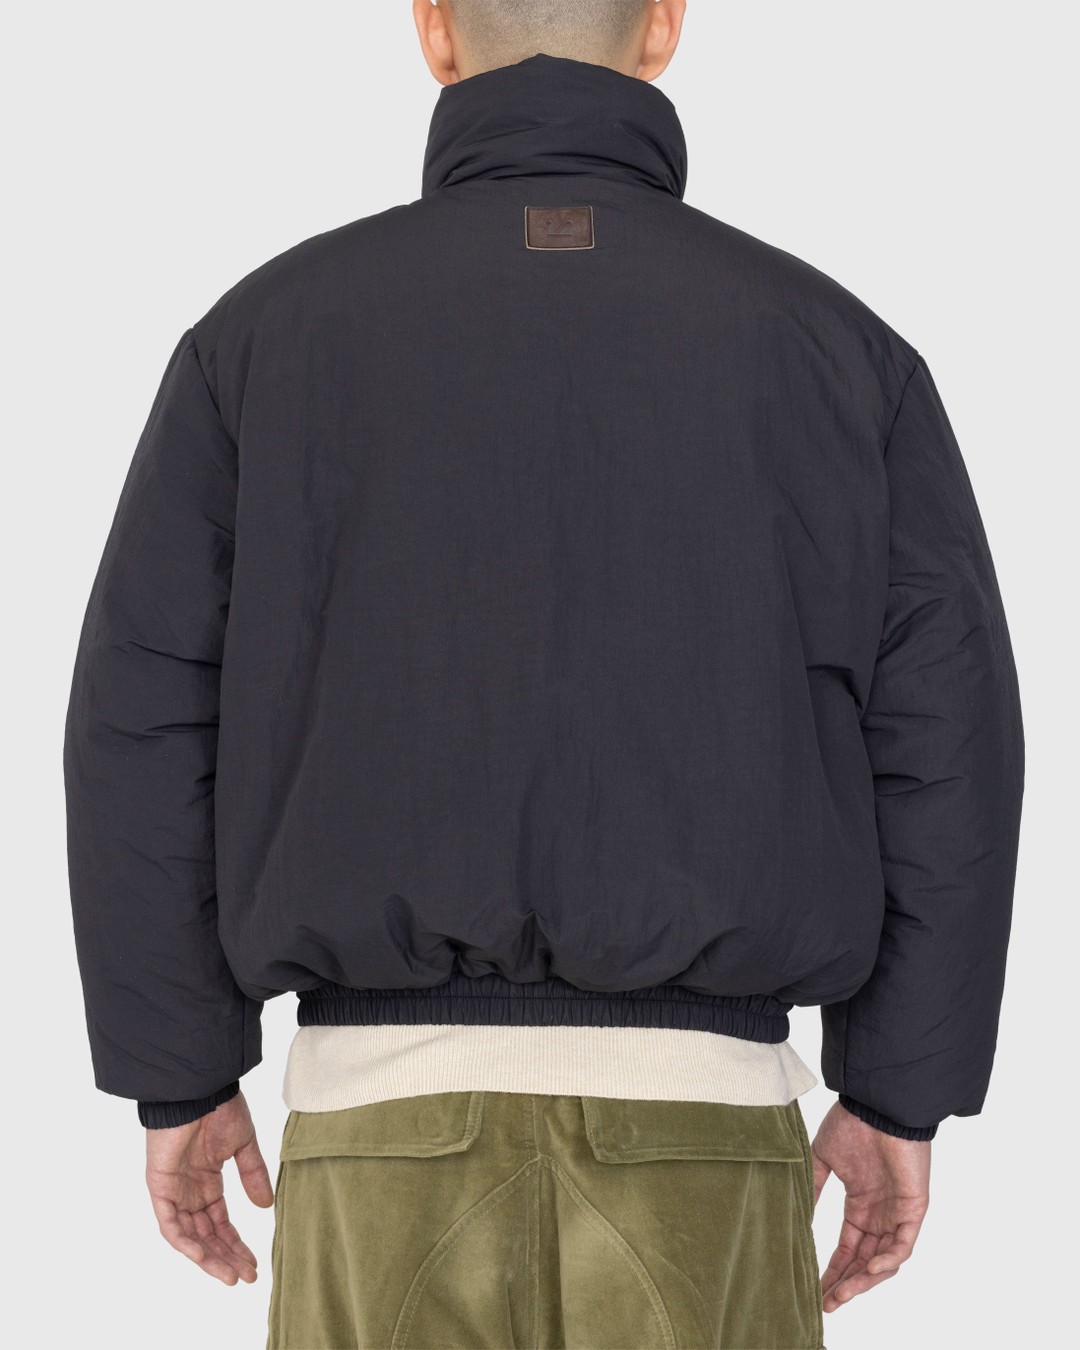 Acne Studios – Padded Nylon Jacket Black - Outerwear - Black - Image 5